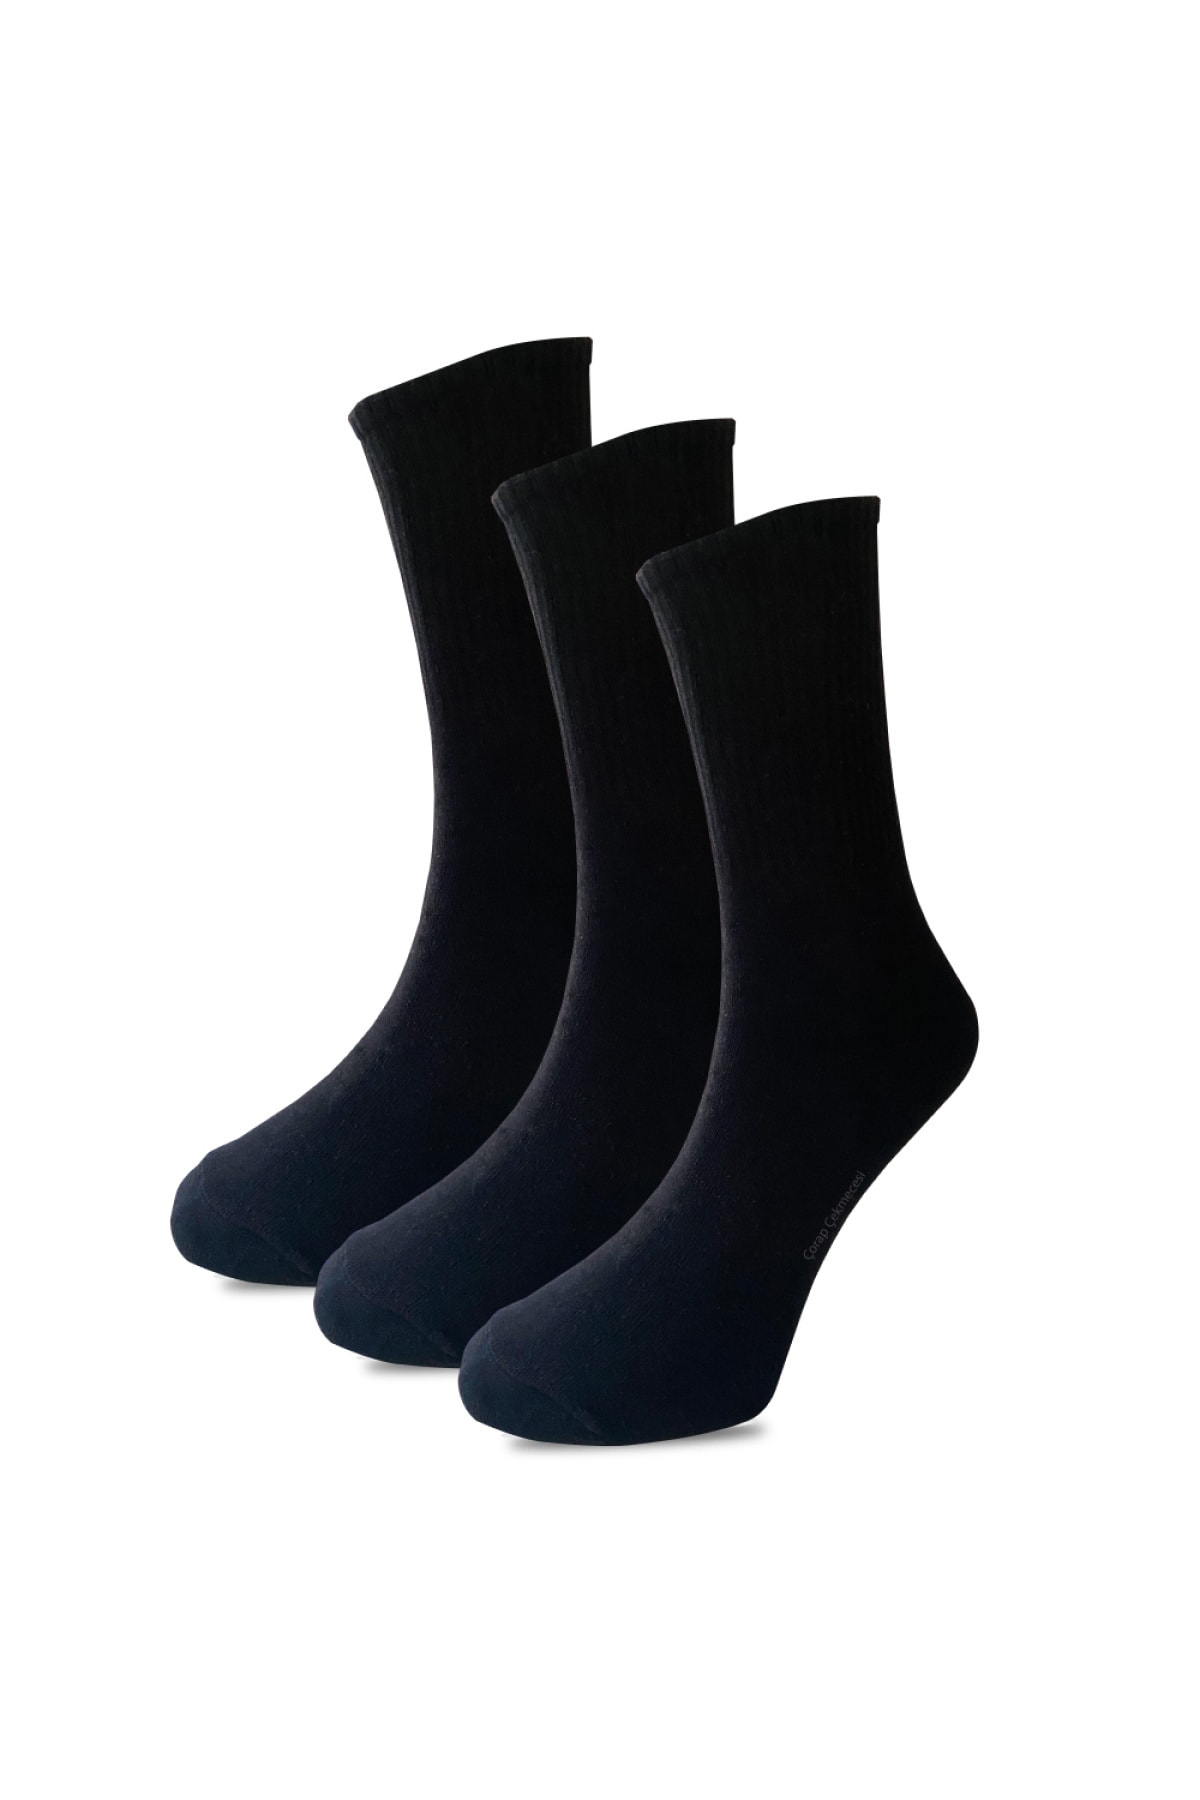 Çorap Çekmecesi Pamuklu Düz Siyah Tenis Çorap 3'lü